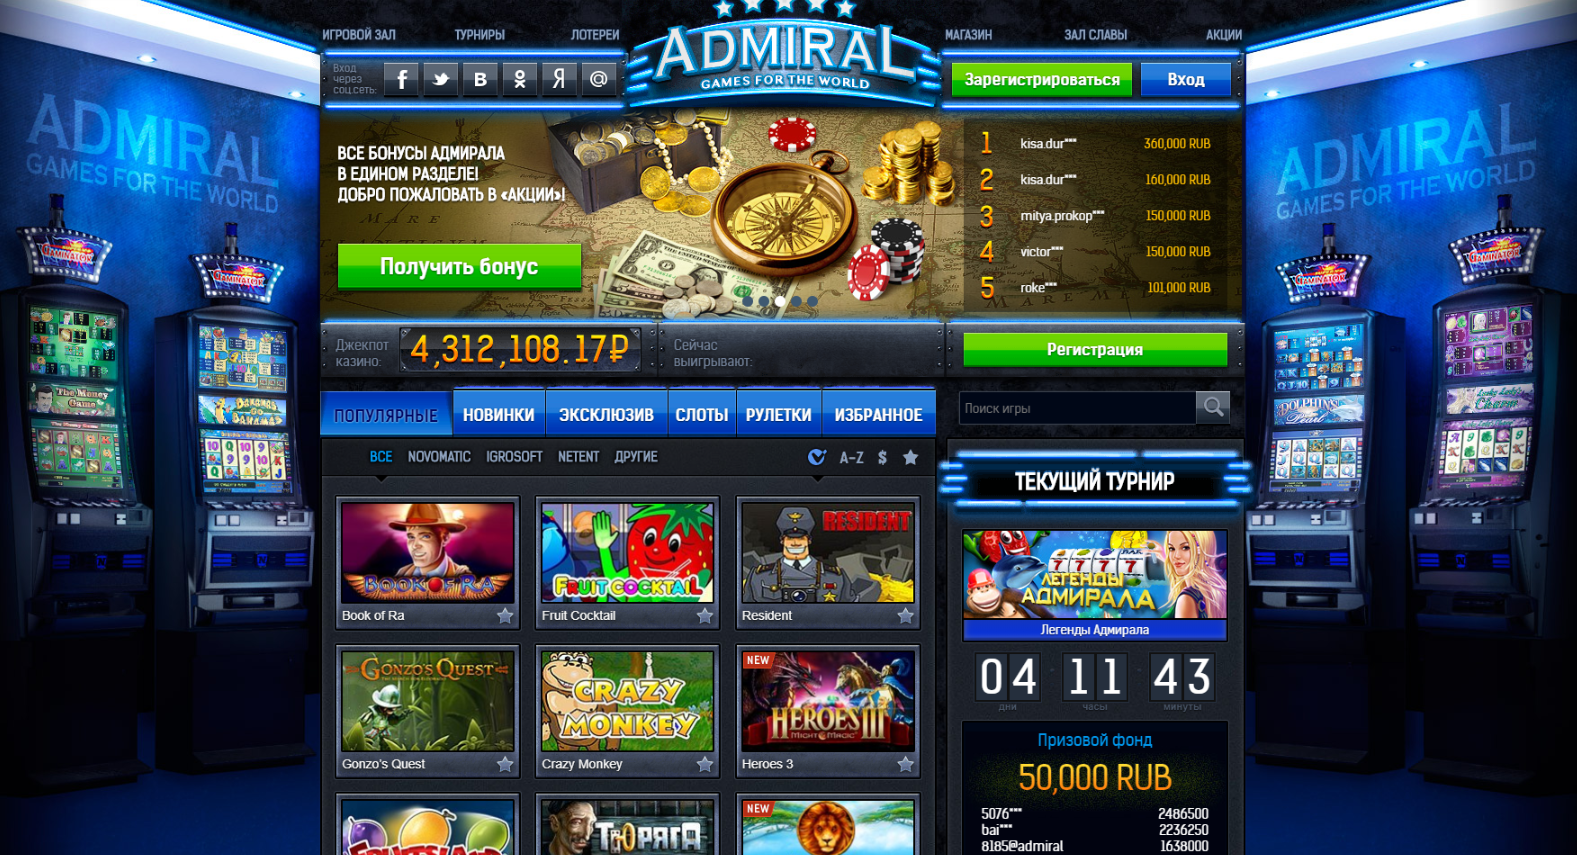 Адмирал casino games admiral game com ru. Игровые автоматы на реальные деньги рейтинг. Рейтинг лучших казино.